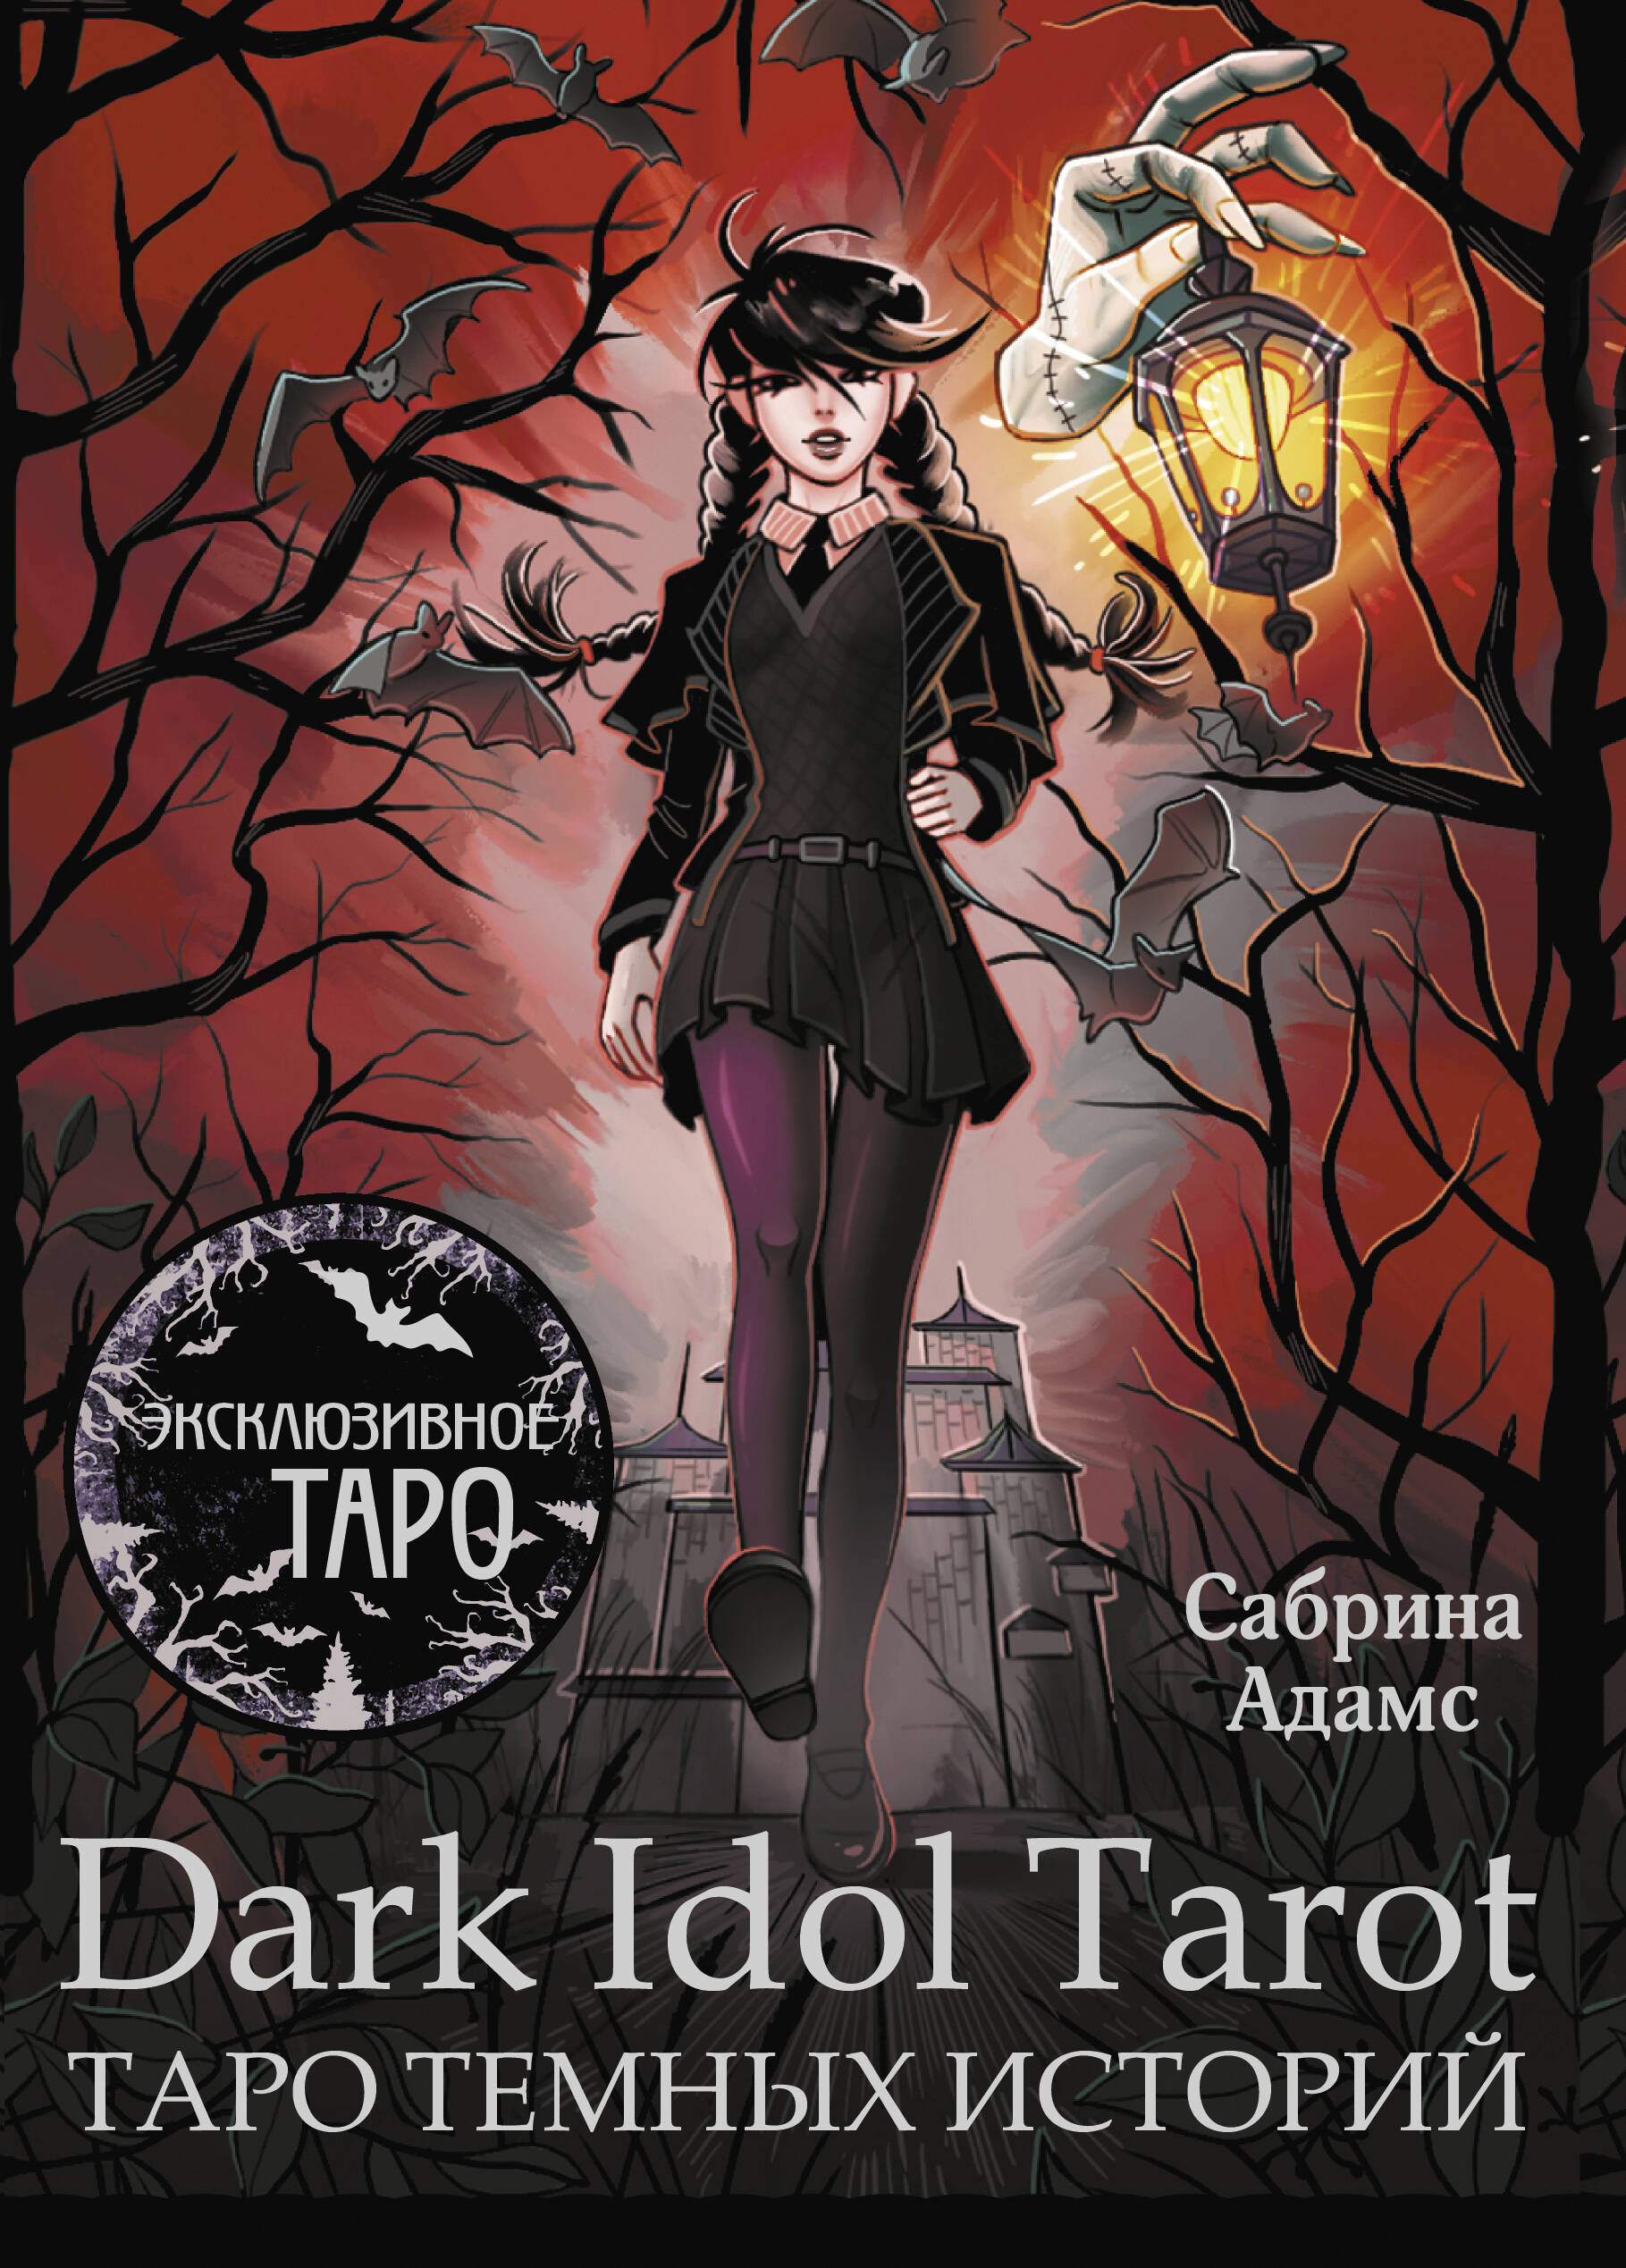 карты таро decameron tarot классическая колода 78шт 100% пластик с высоким качеством печати 720dpi Адамс Сабрина Dark Idol Tarot. Таро темных историй